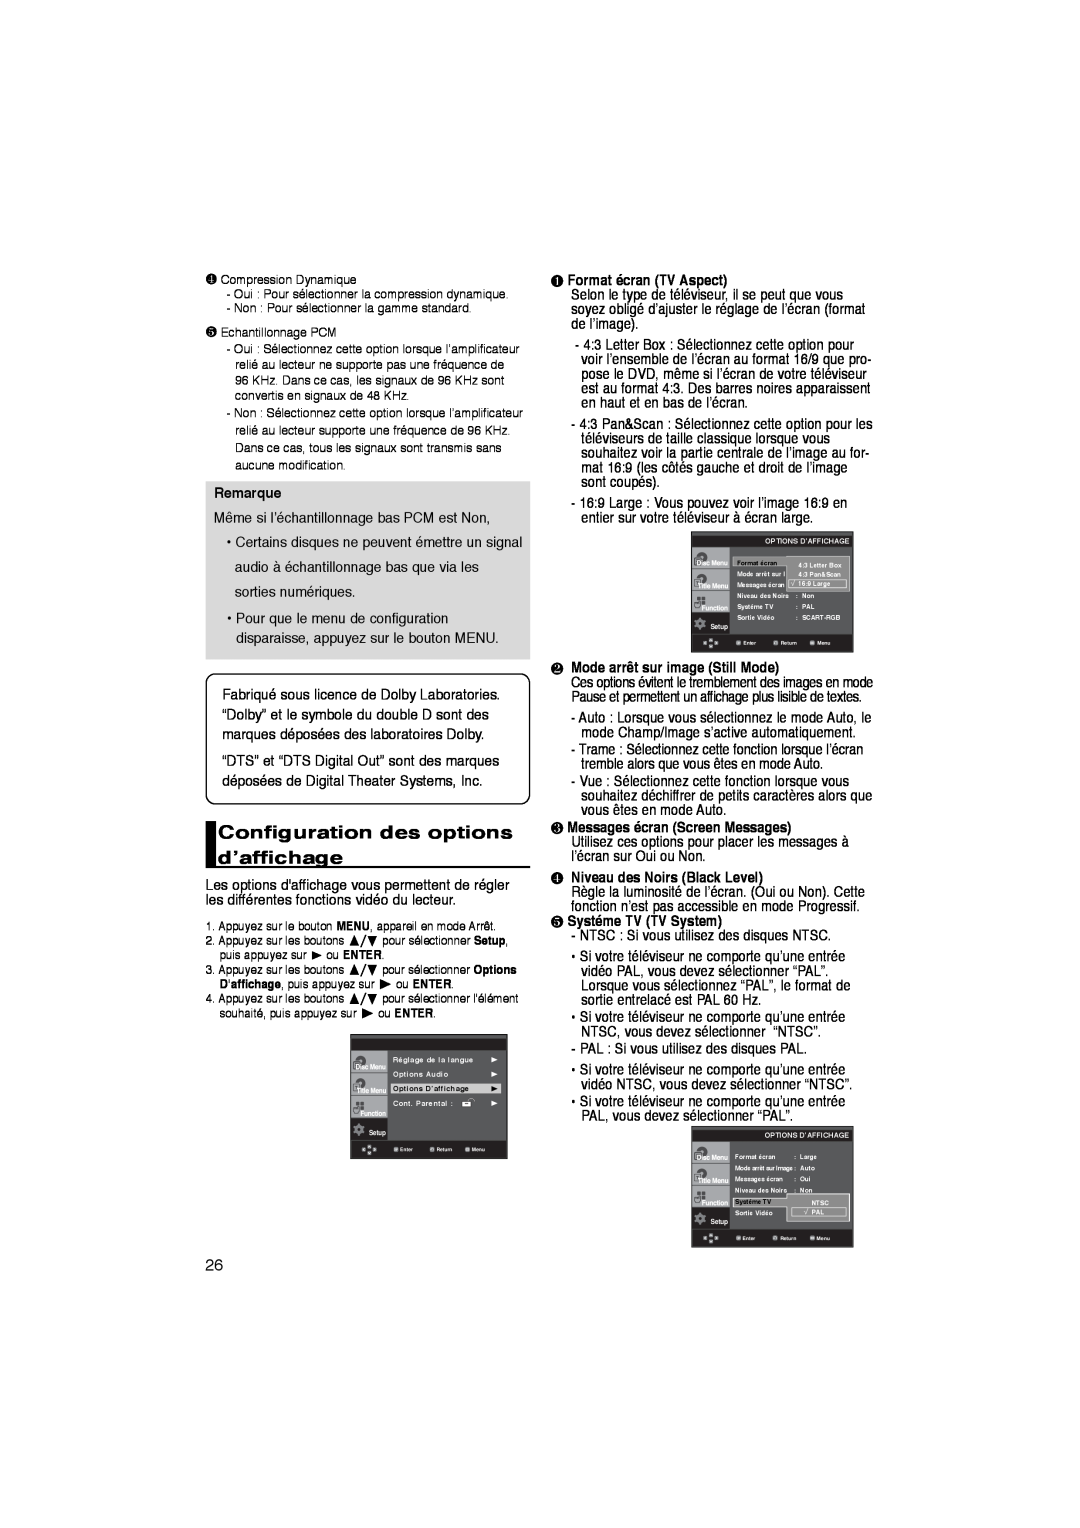 Samsung DVD-P260K/AFR Configuration des options d’affichage, ❶ Format écran TV Aspect, ❷ Mode arrêt sur image Still Mode 